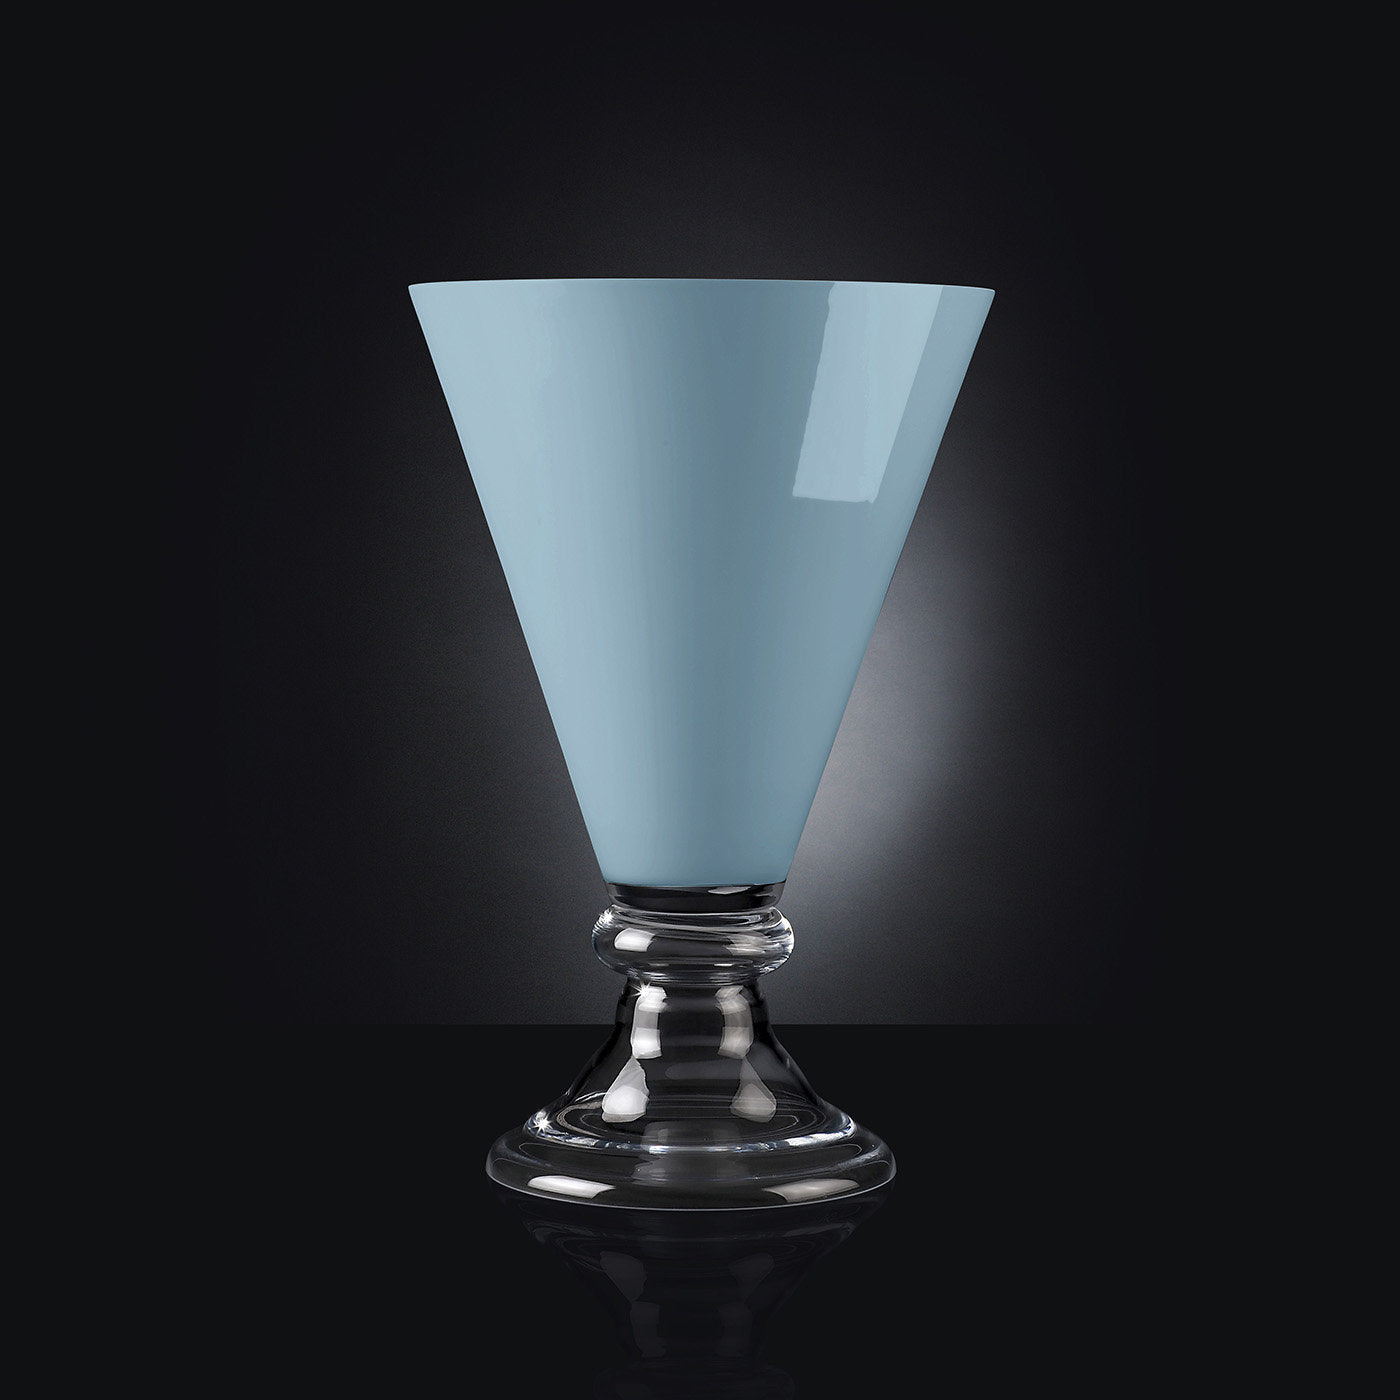 Nouveau vase romantique bleu - Vue alternative 1